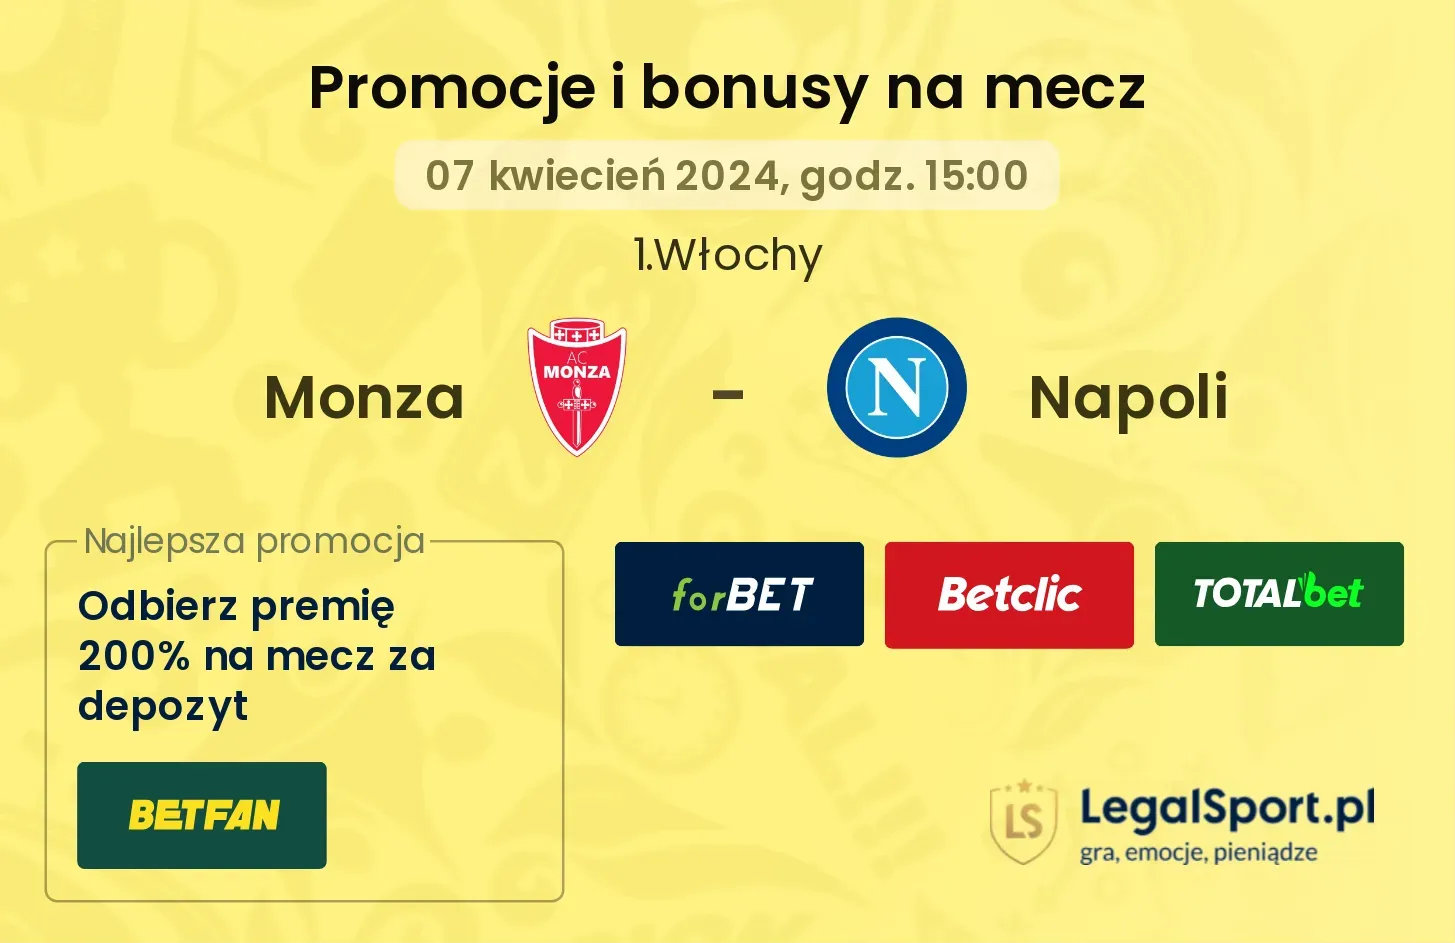 Monza - Napoli promocje bonusy na mecz